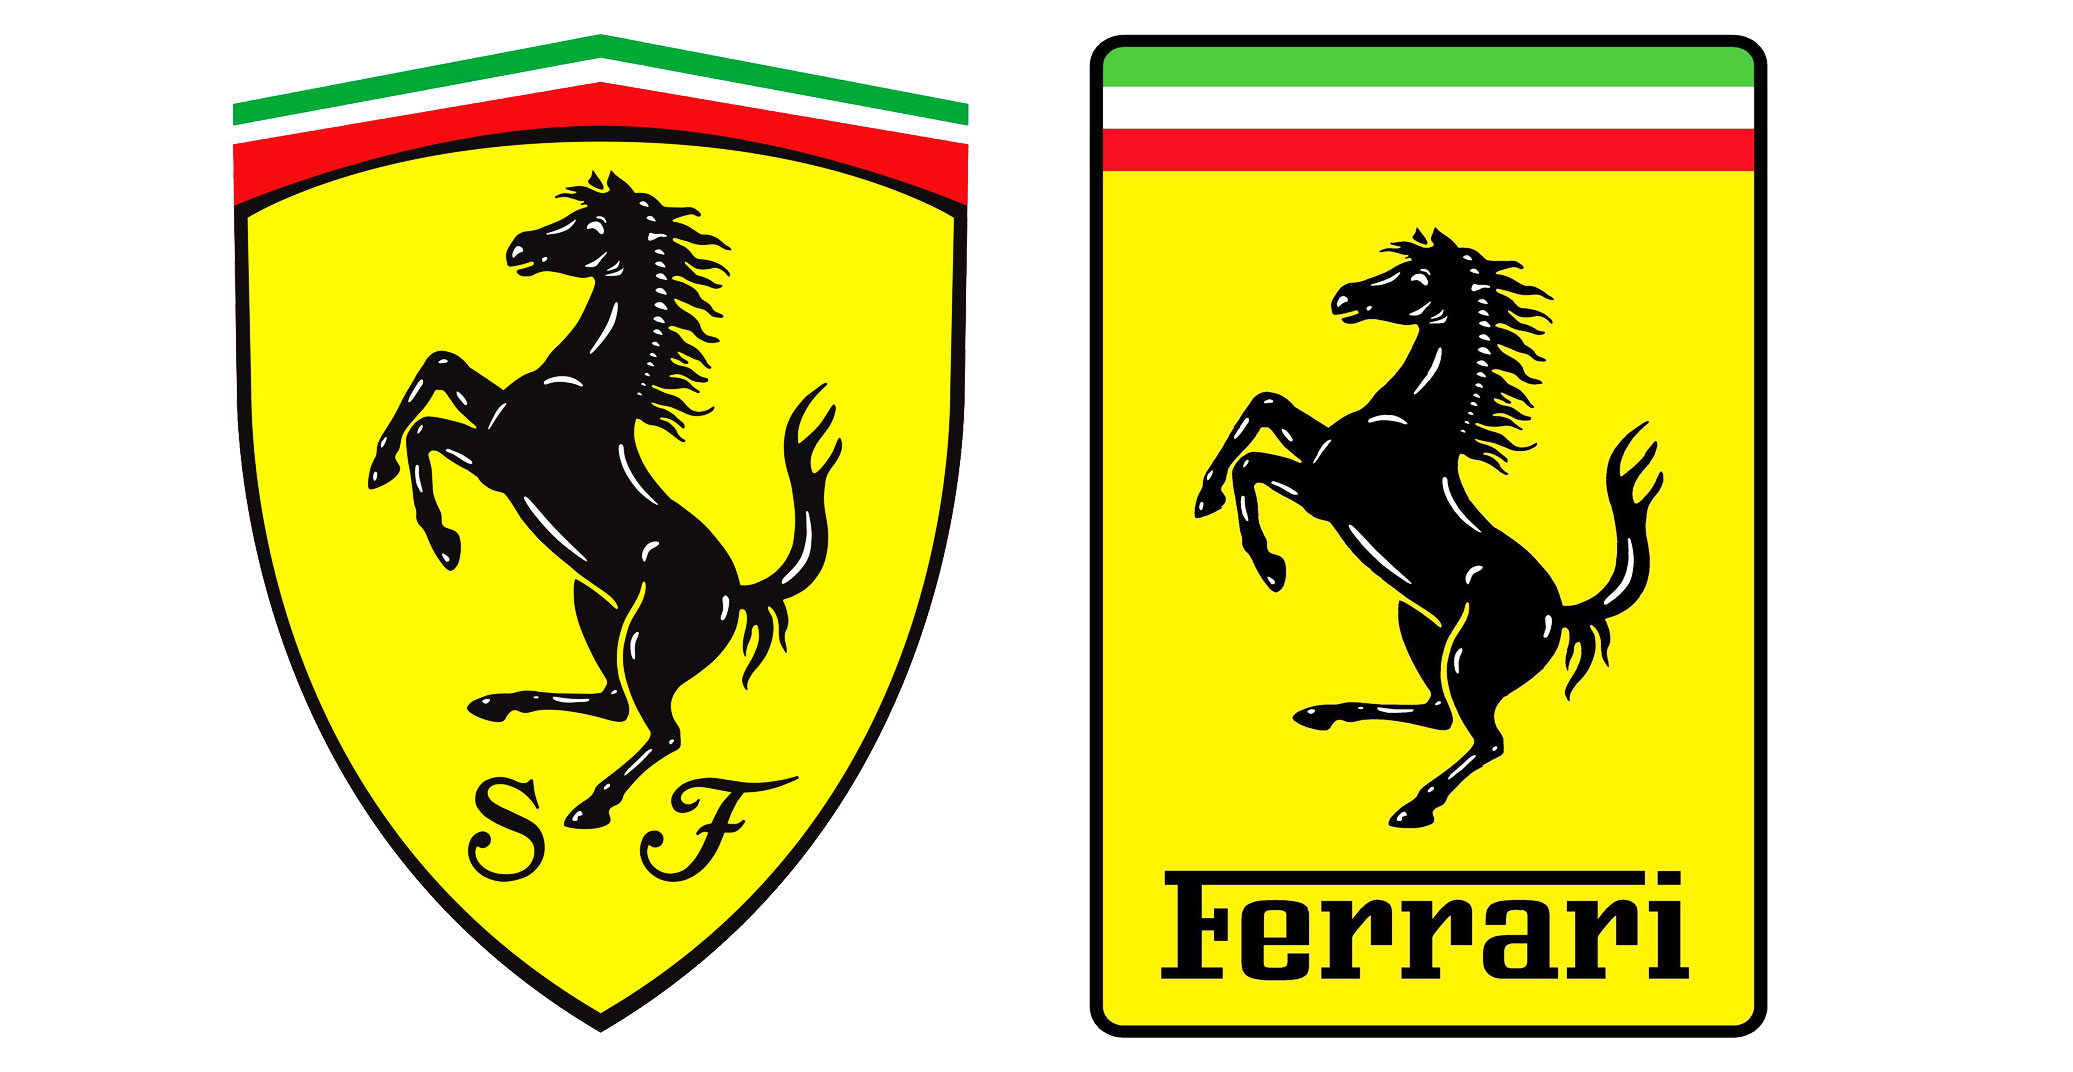 Storia del logo Ferrari con simbolo del cavallino rampante donato da Baracca